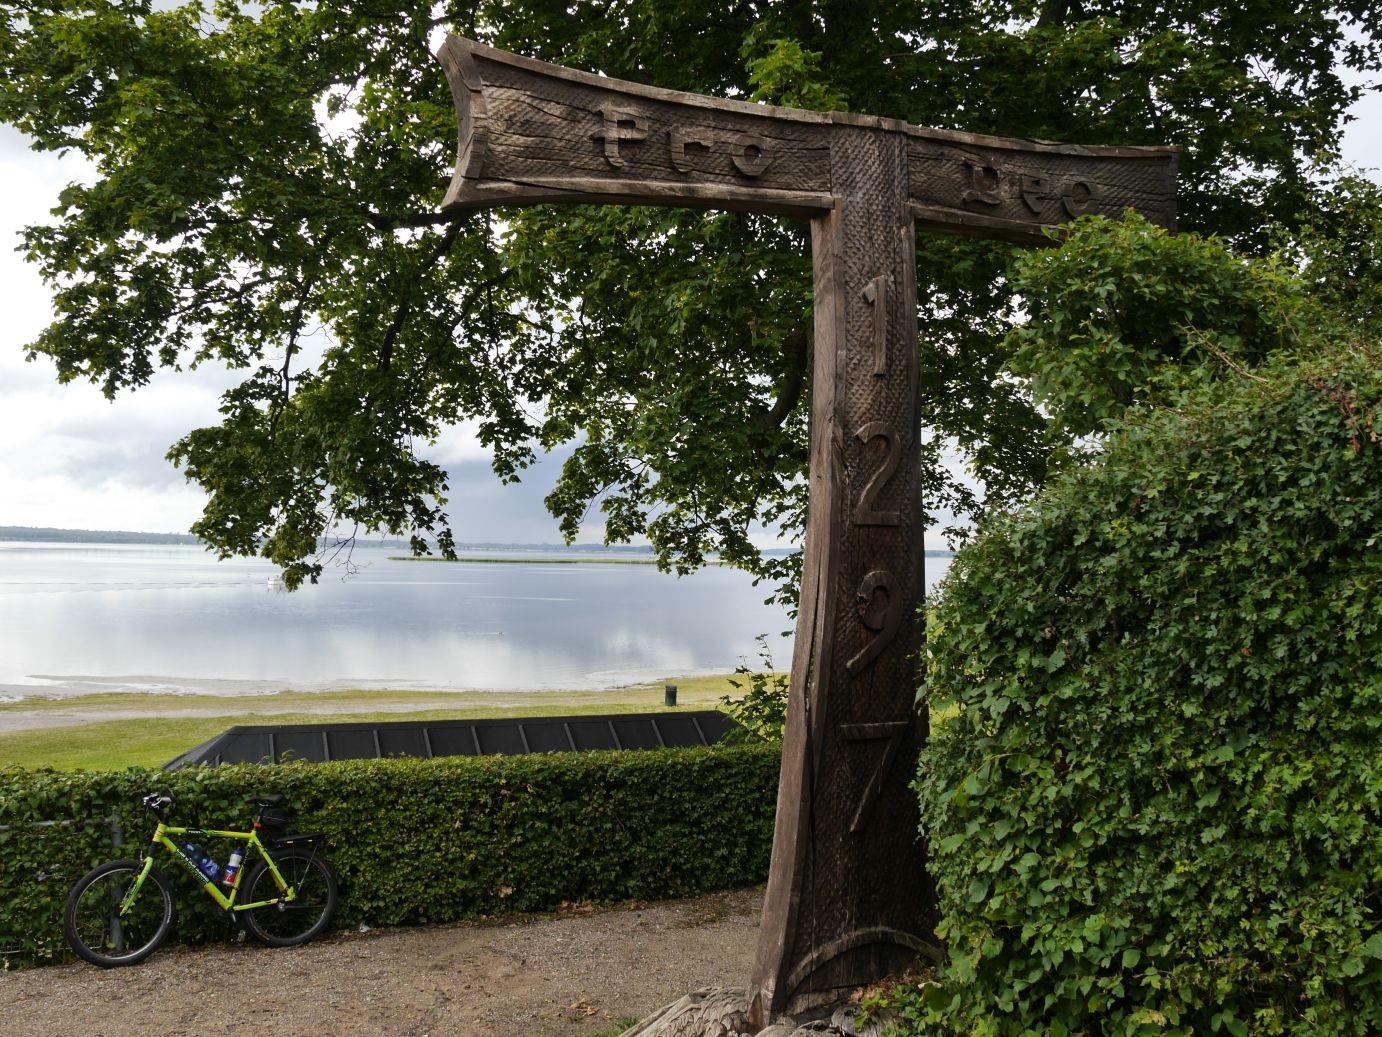 Præstø bedeutet Insel der Priester, Erinnerung an den Antoniterorden